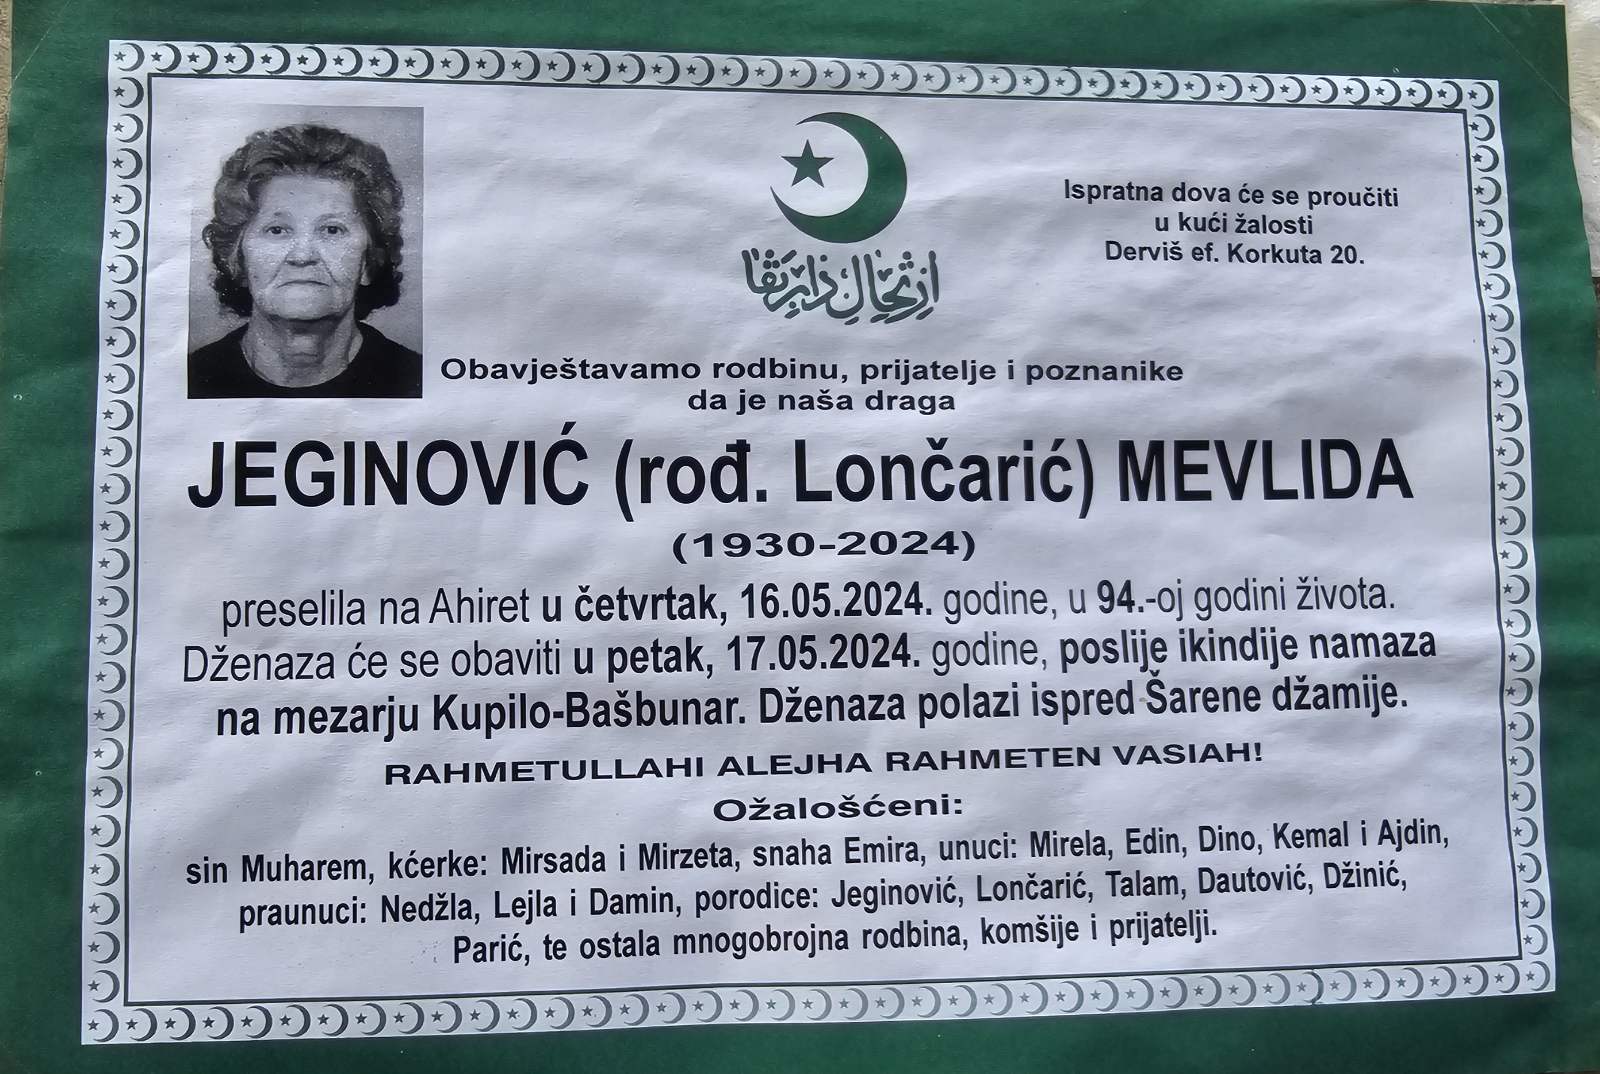 Preminula je Jeginović Mevlida